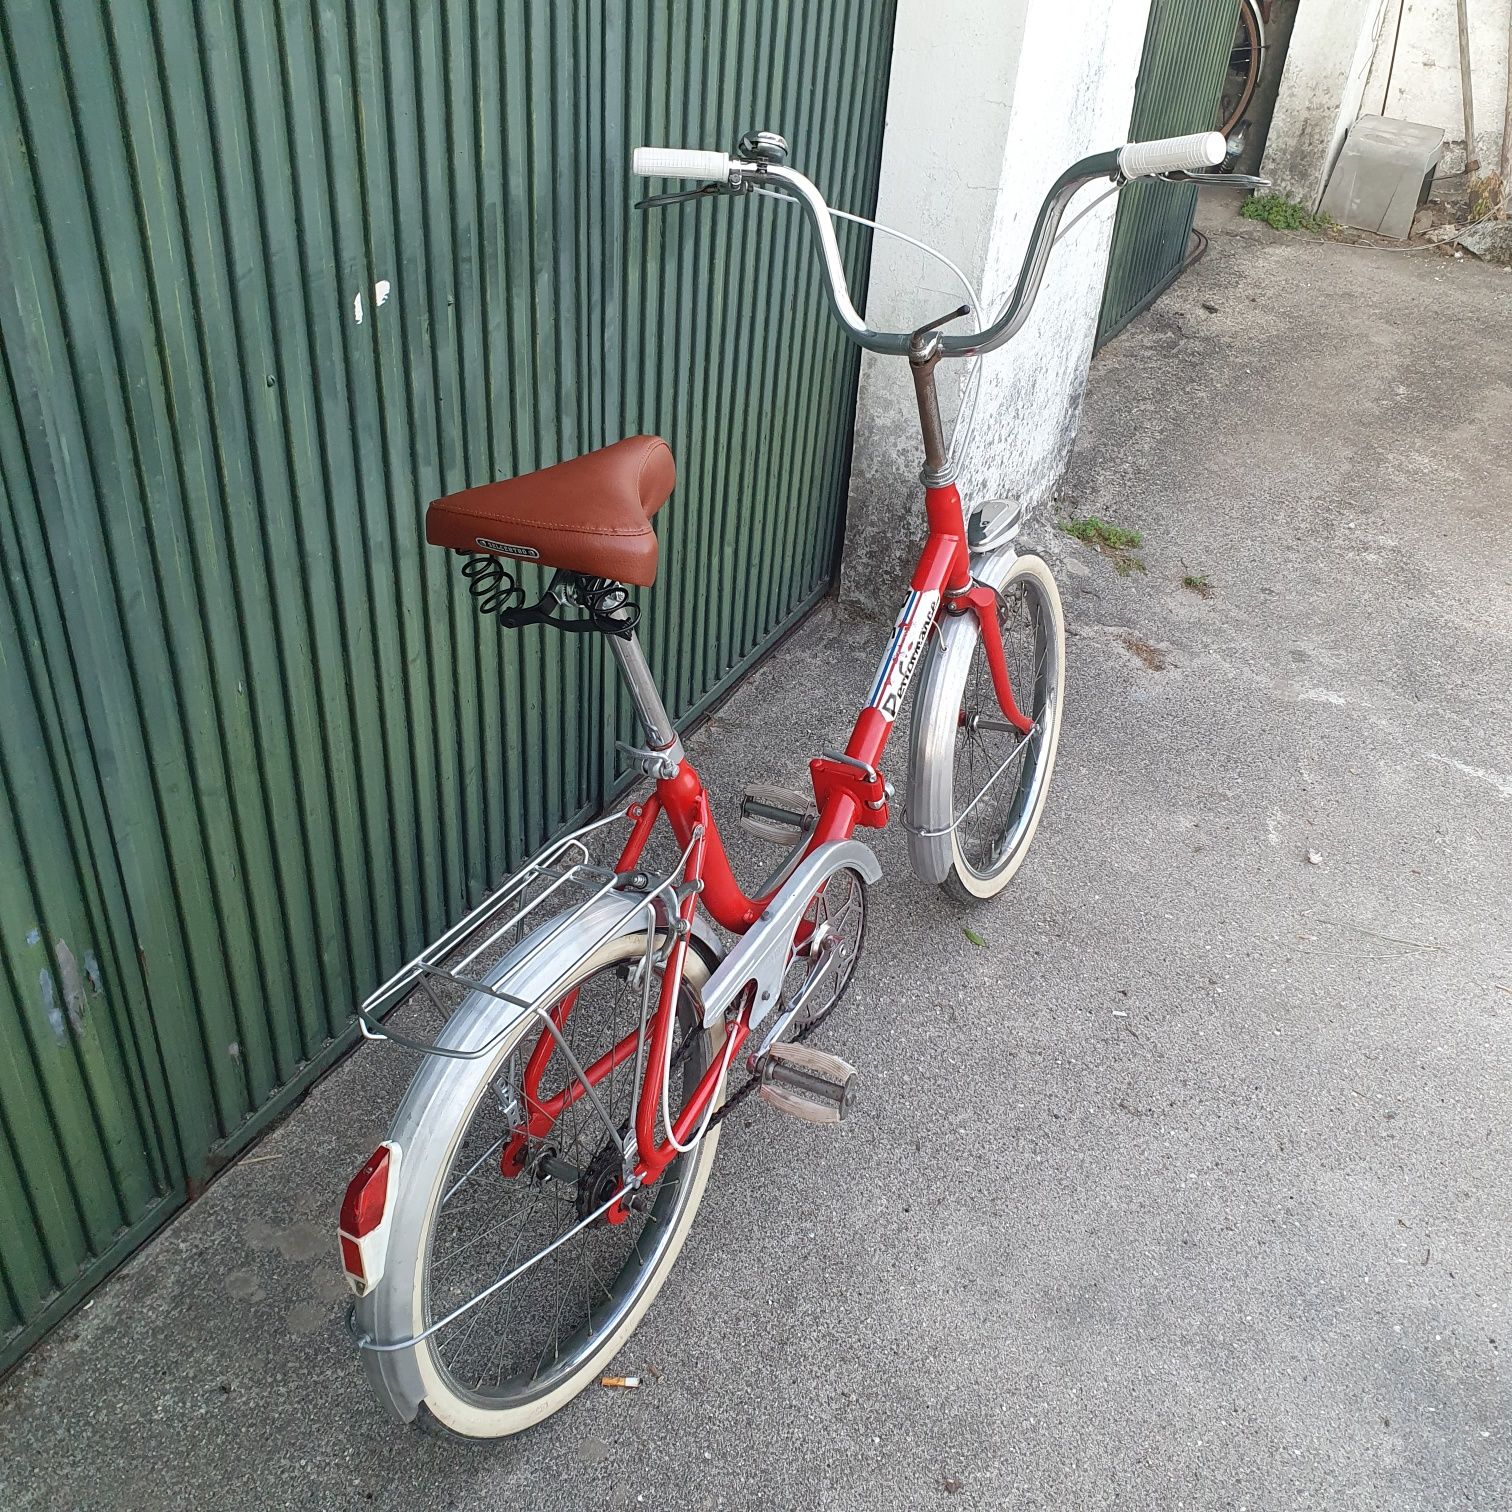 Bicicleta dobravel antiga